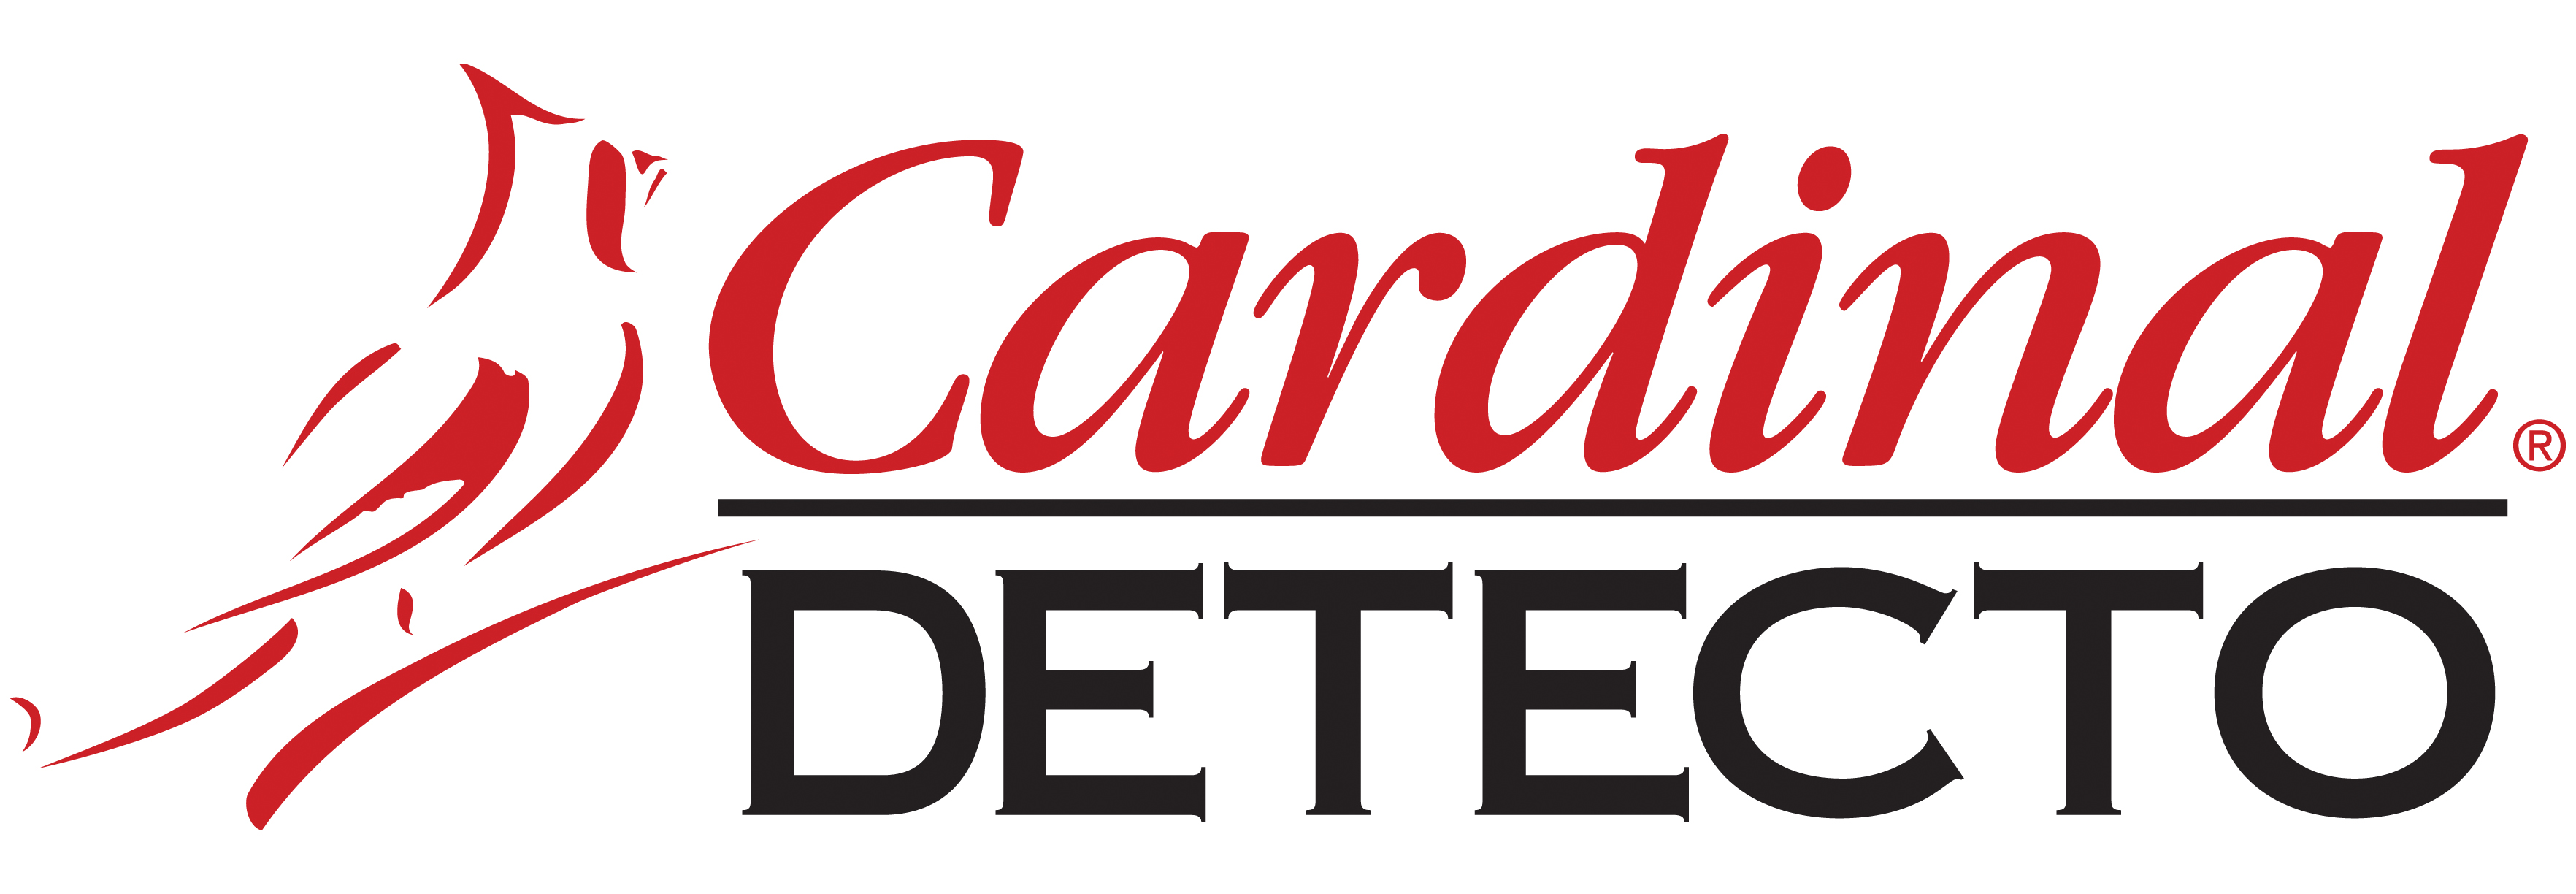 Cardinal Detecto Logo